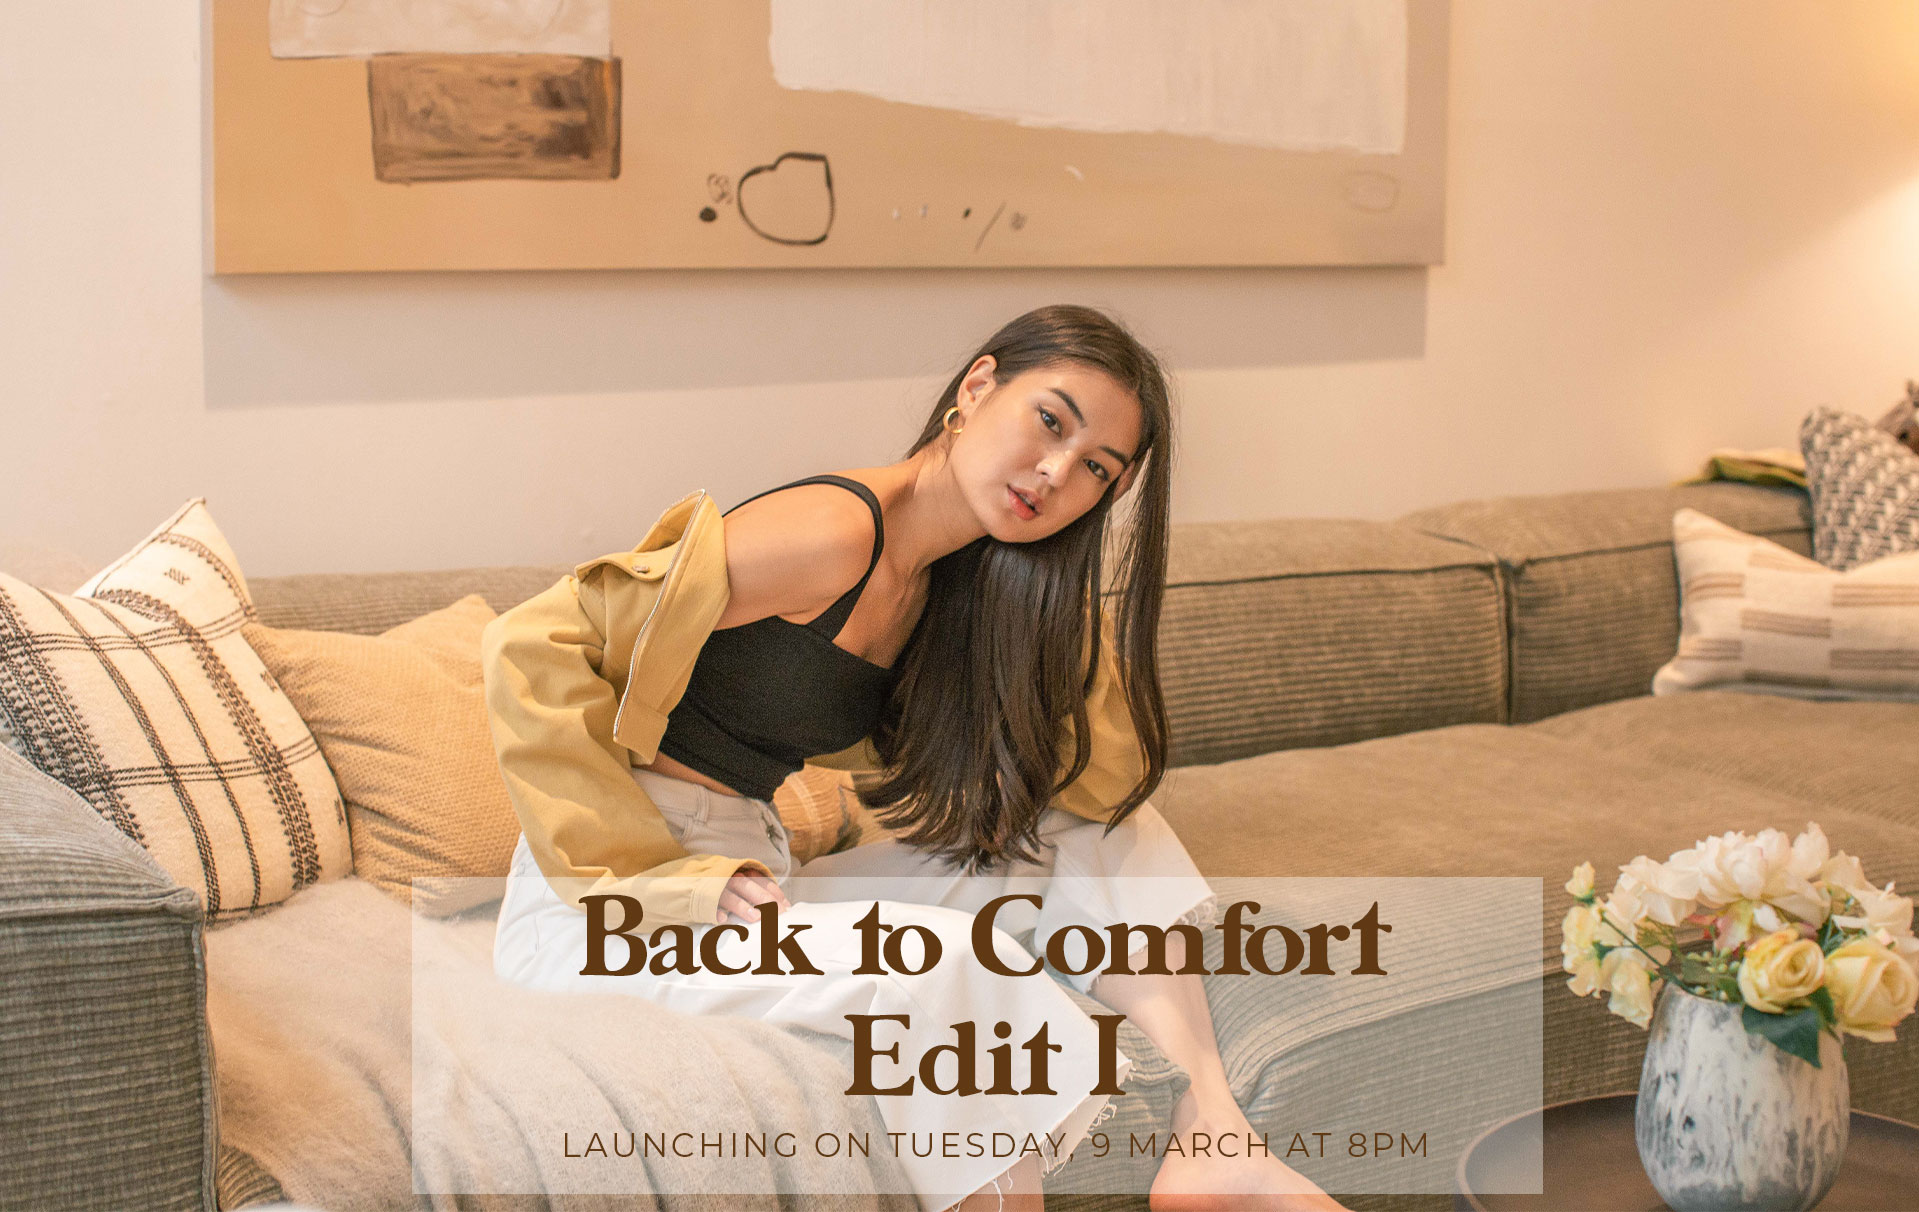 Back to Comfort: Edit I